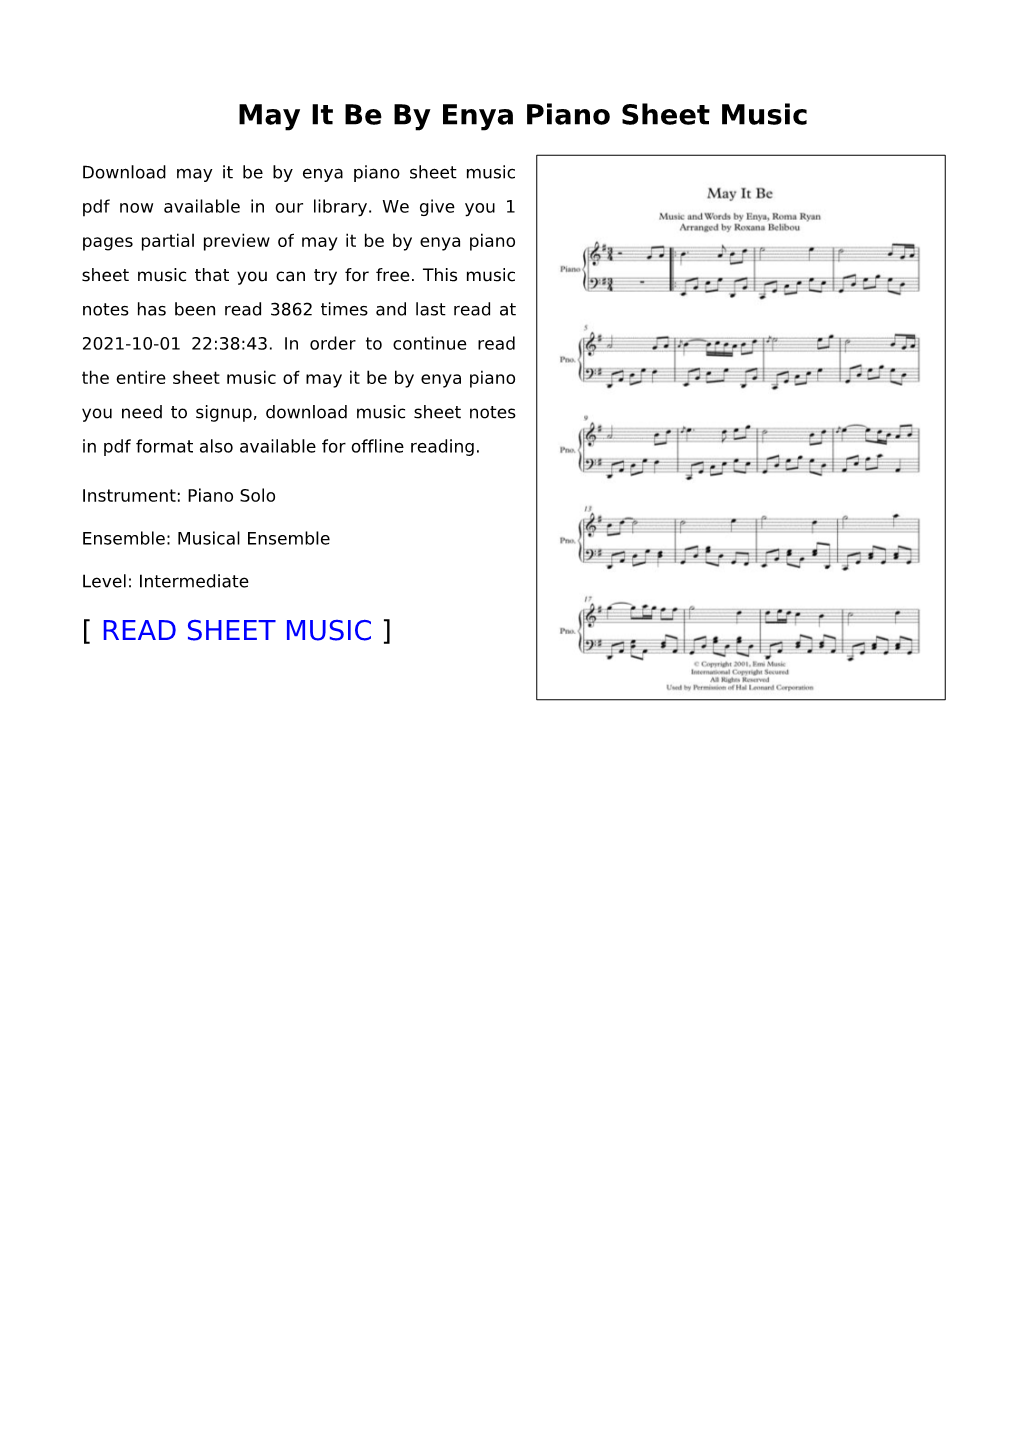 May It Be by Enya Piano Sheet Music